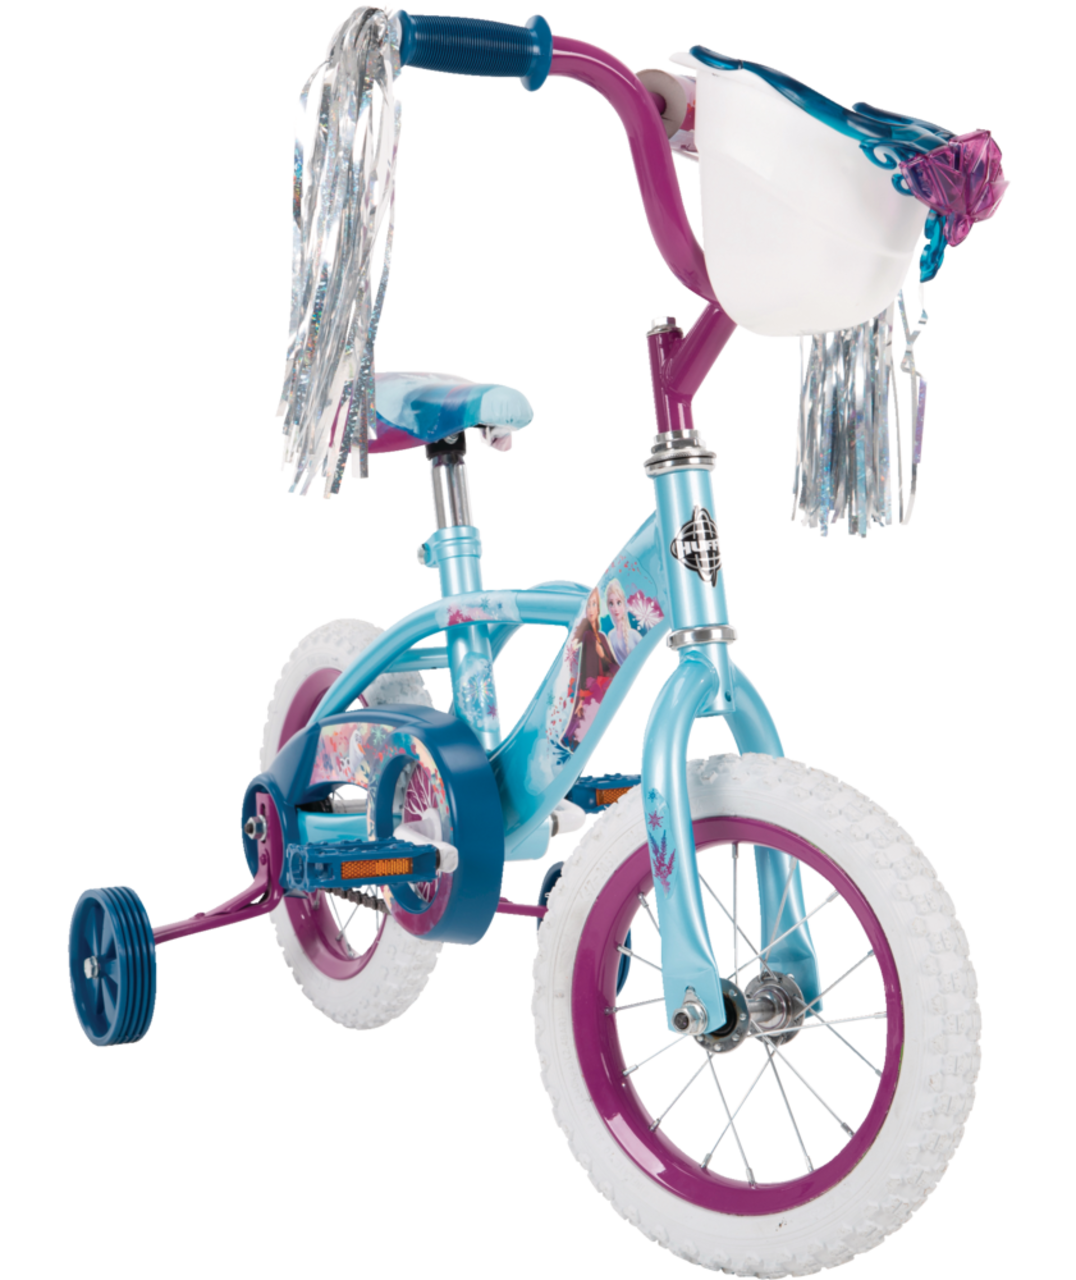 Vélo Disney La Reine des neiges pour enfants, 12 po, bleu/blanc